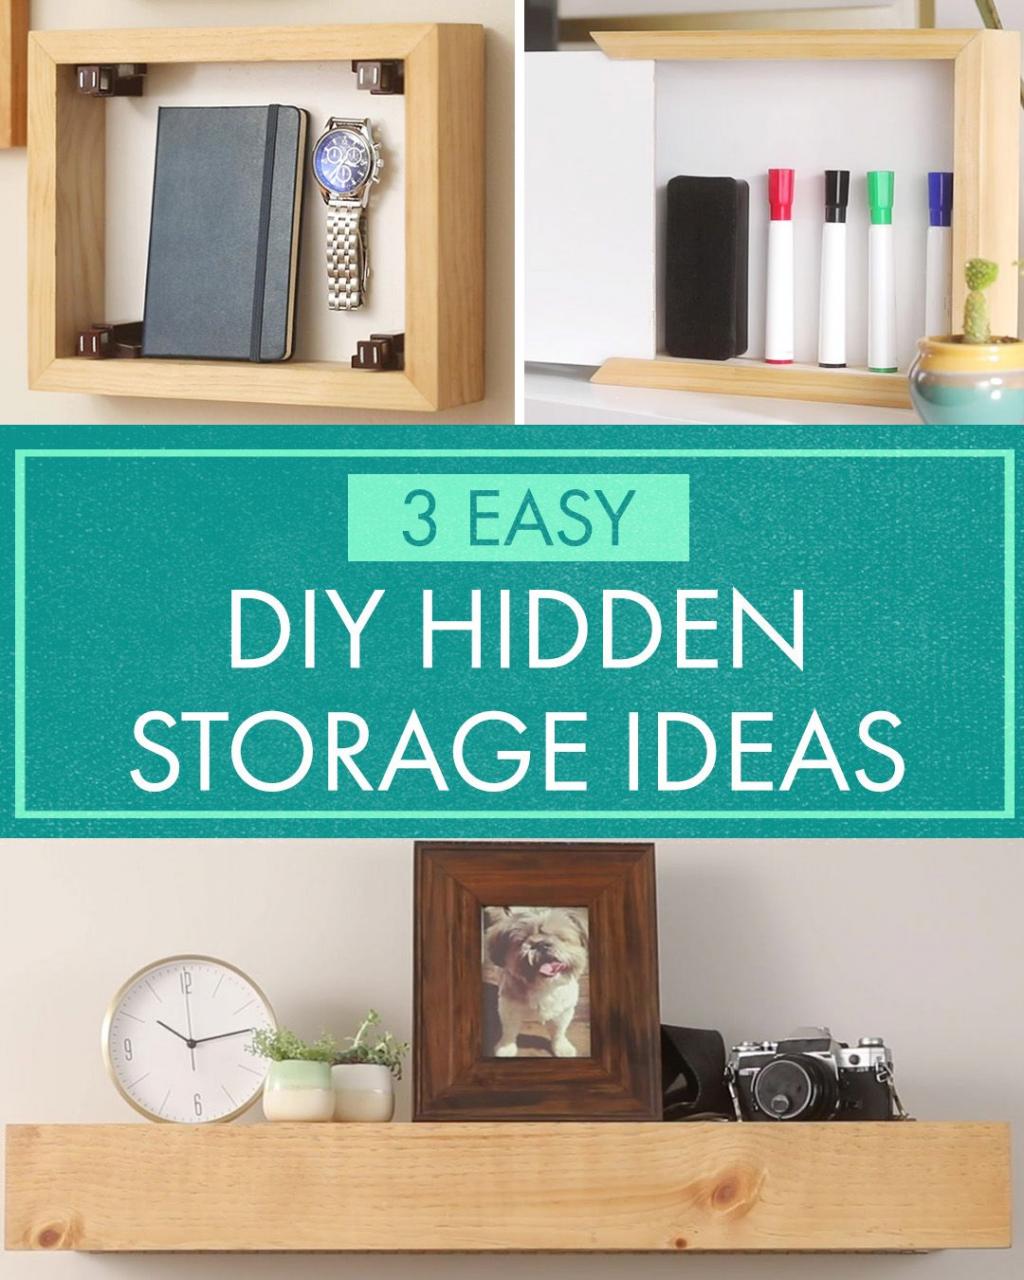 3 HiddenStorage Ideas Diy hidden storage ideas, Diy storage, Diy mailbox